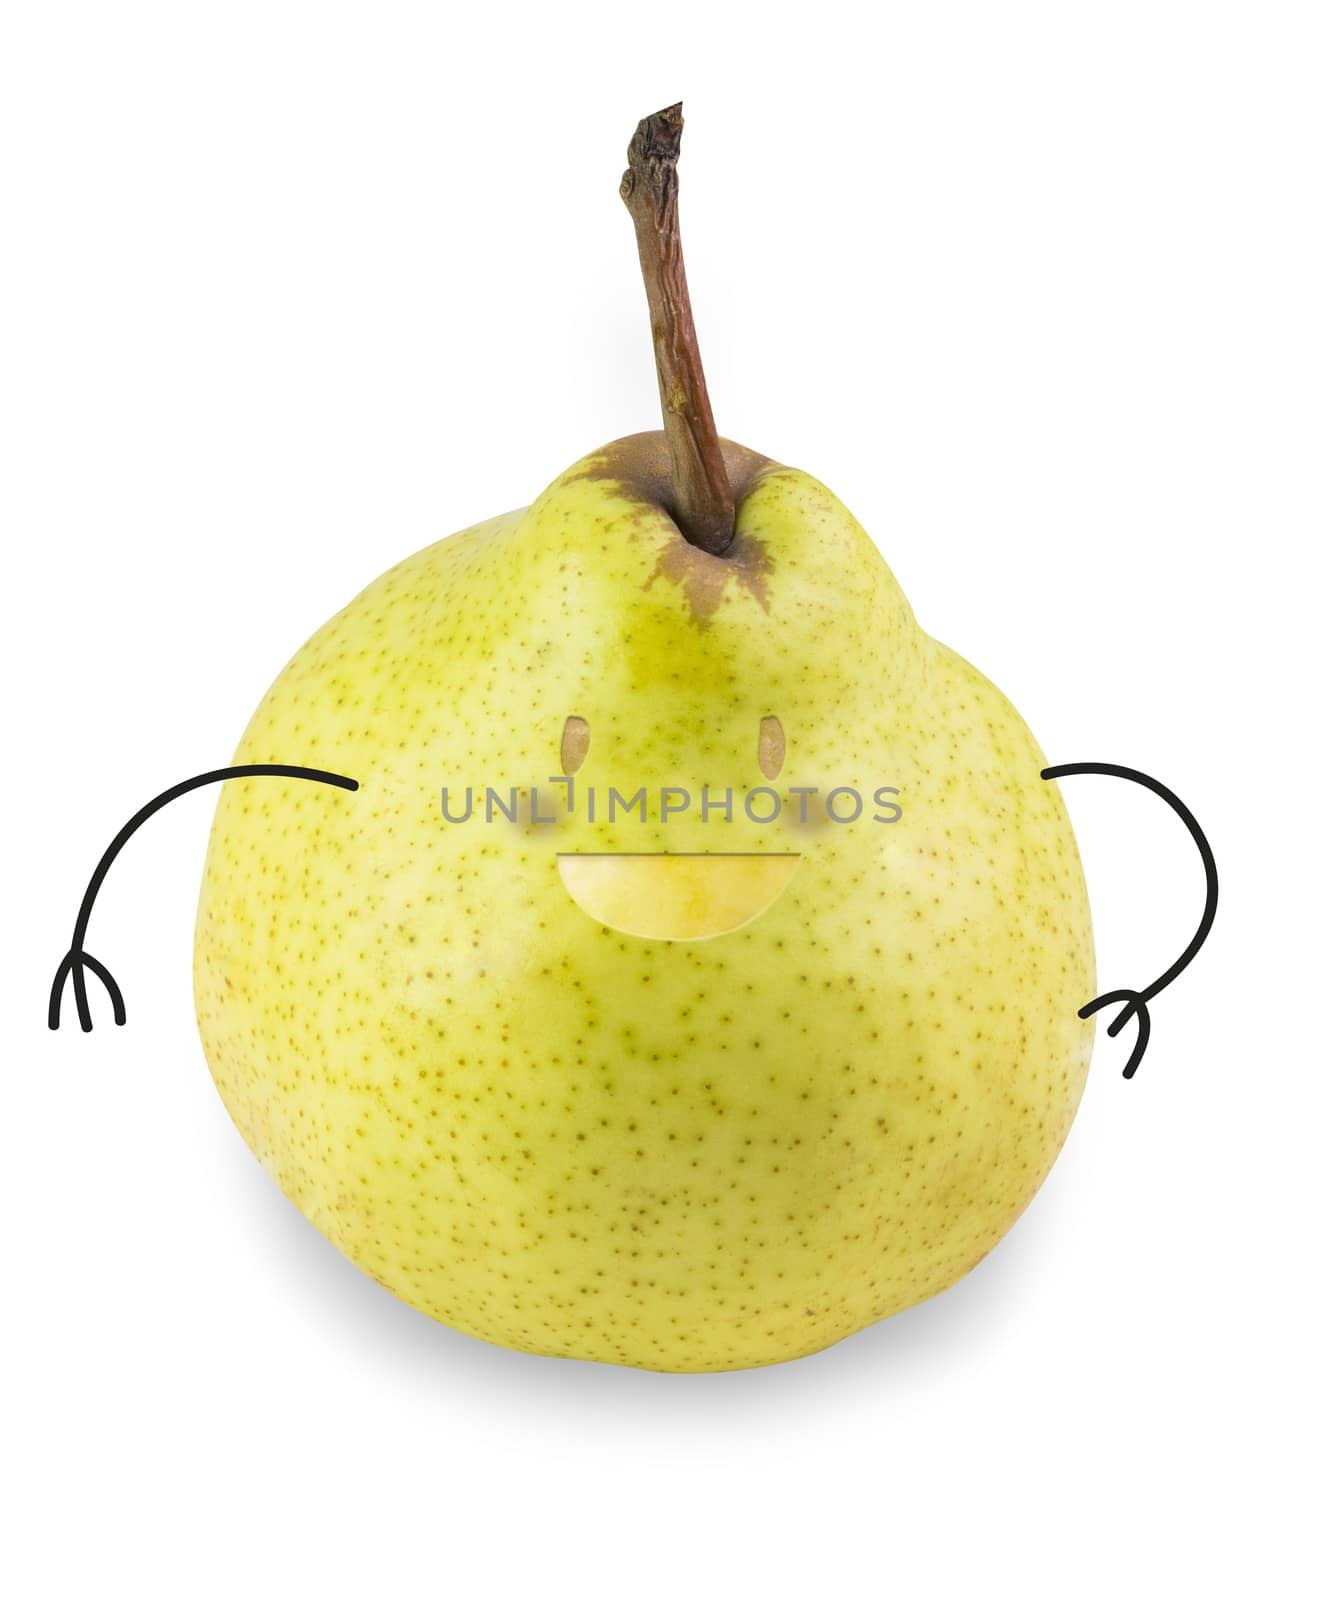 Pear by Onigiristudio